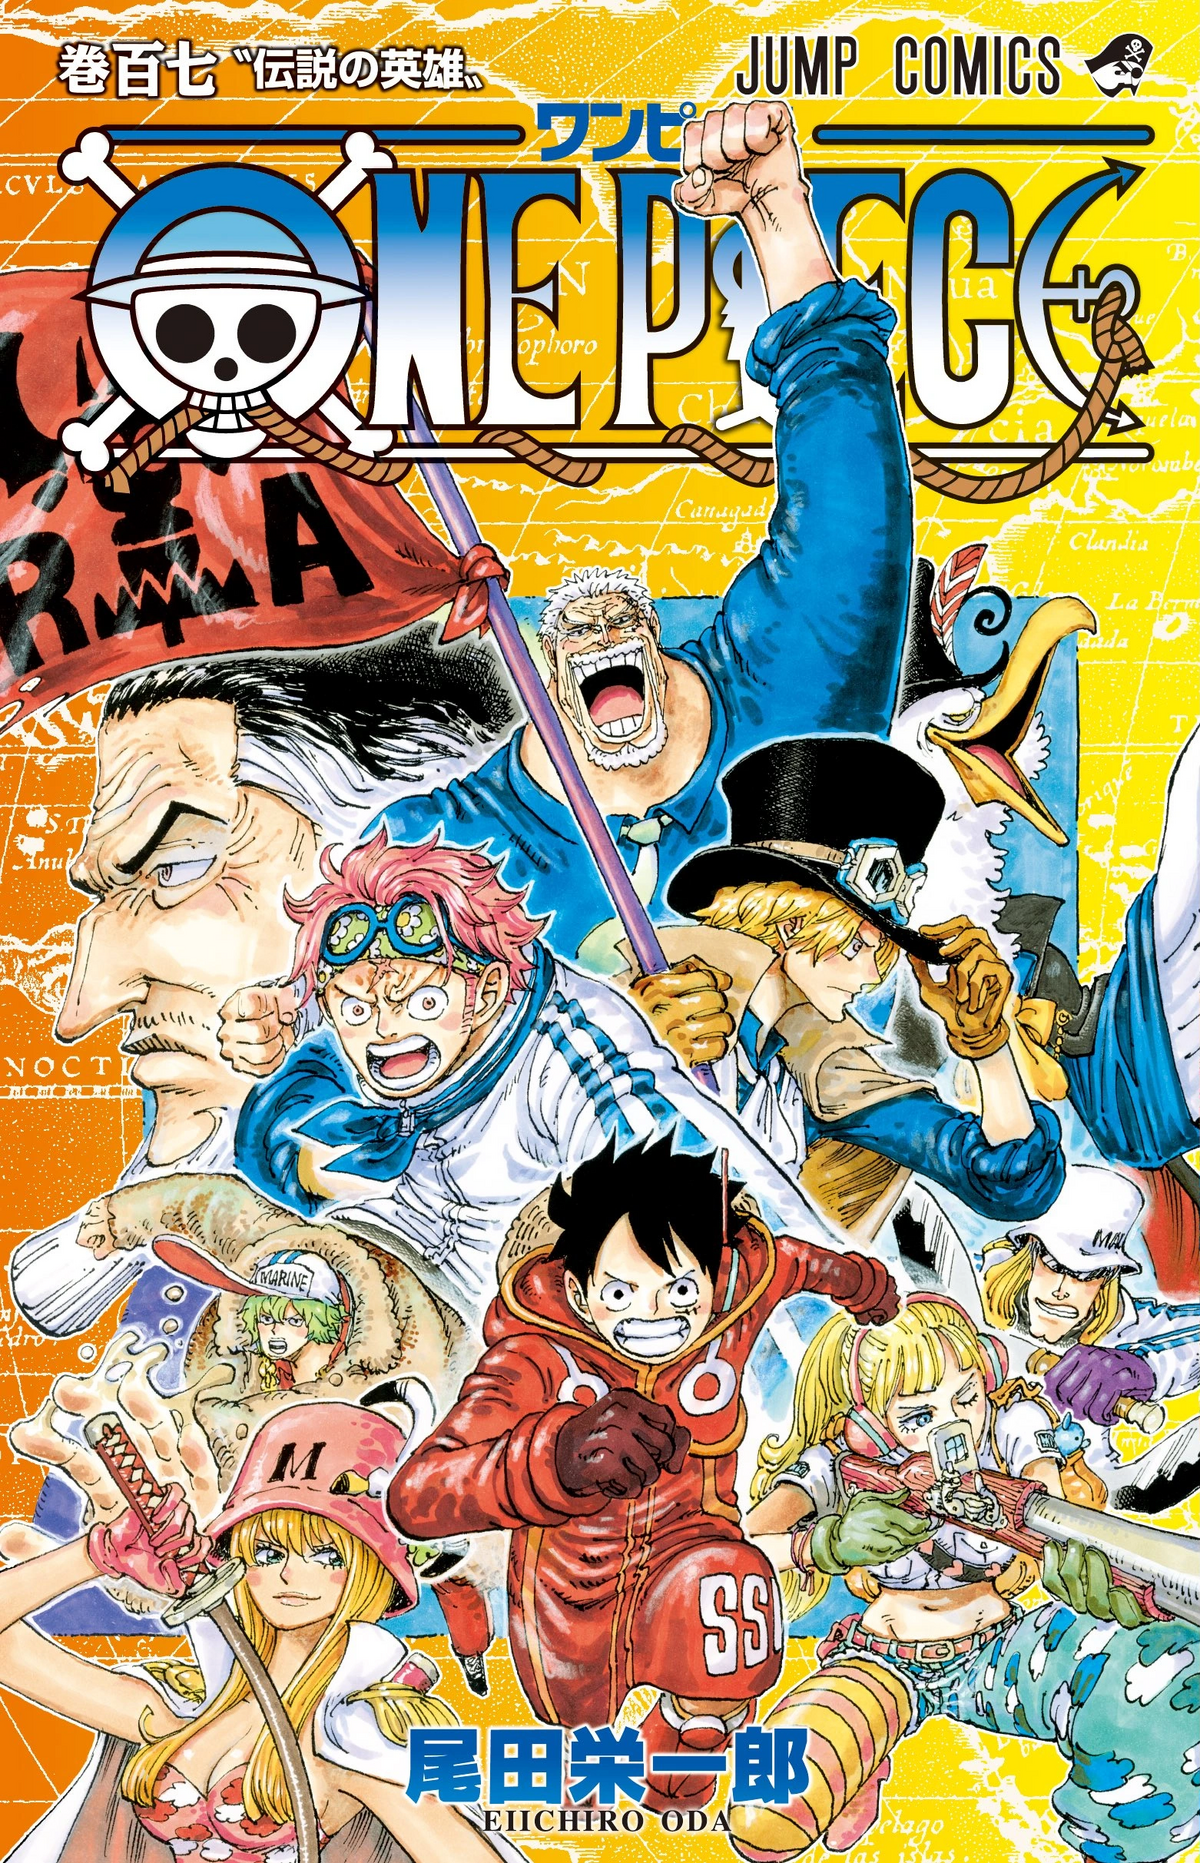 One Piece Manga Box Set 4